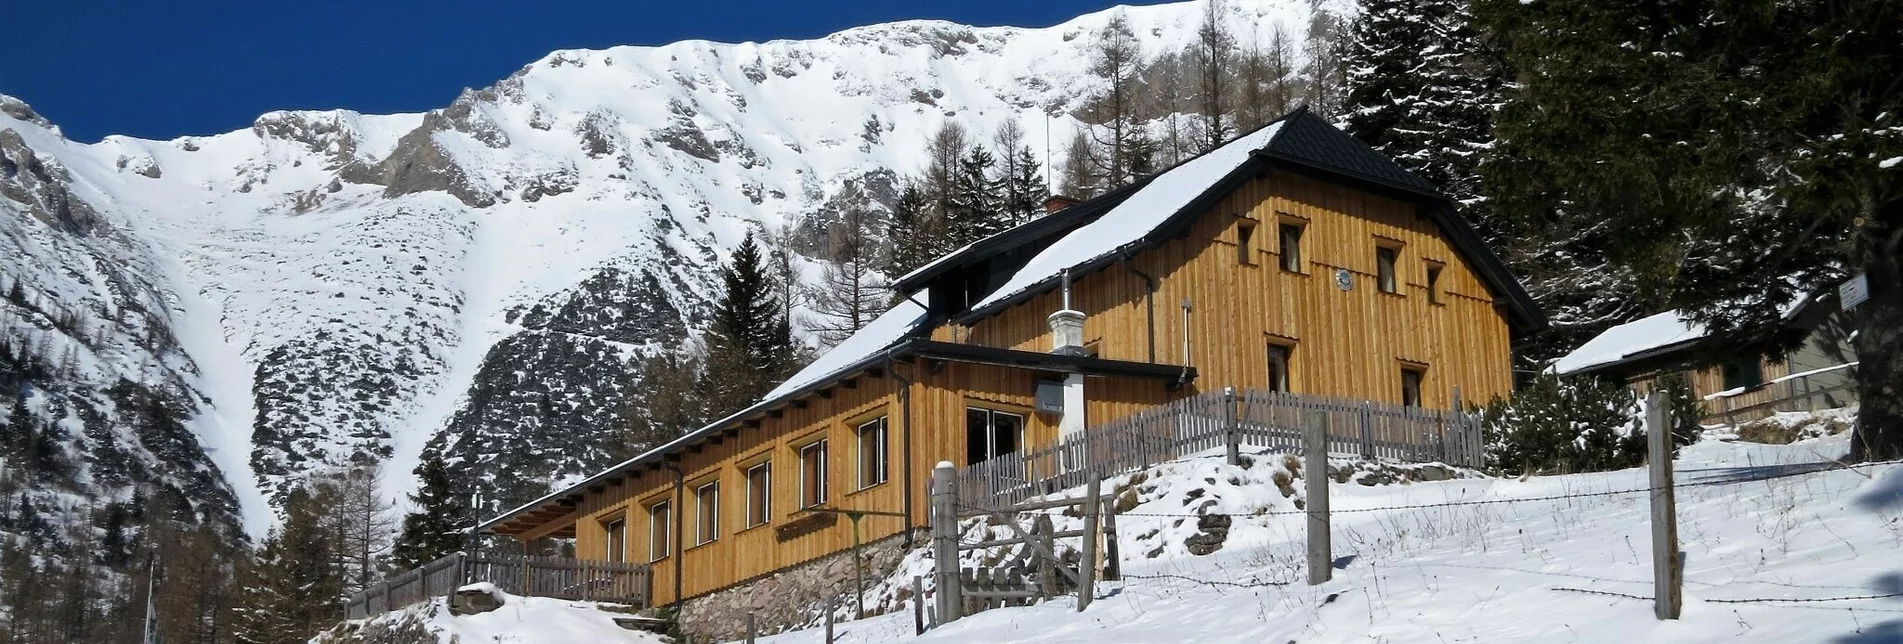 Schneeschuh Auf Schneeschuhen zum Waxriegelhaus - Touren-Impression #1 | © Naturpark Mürzer Oberland